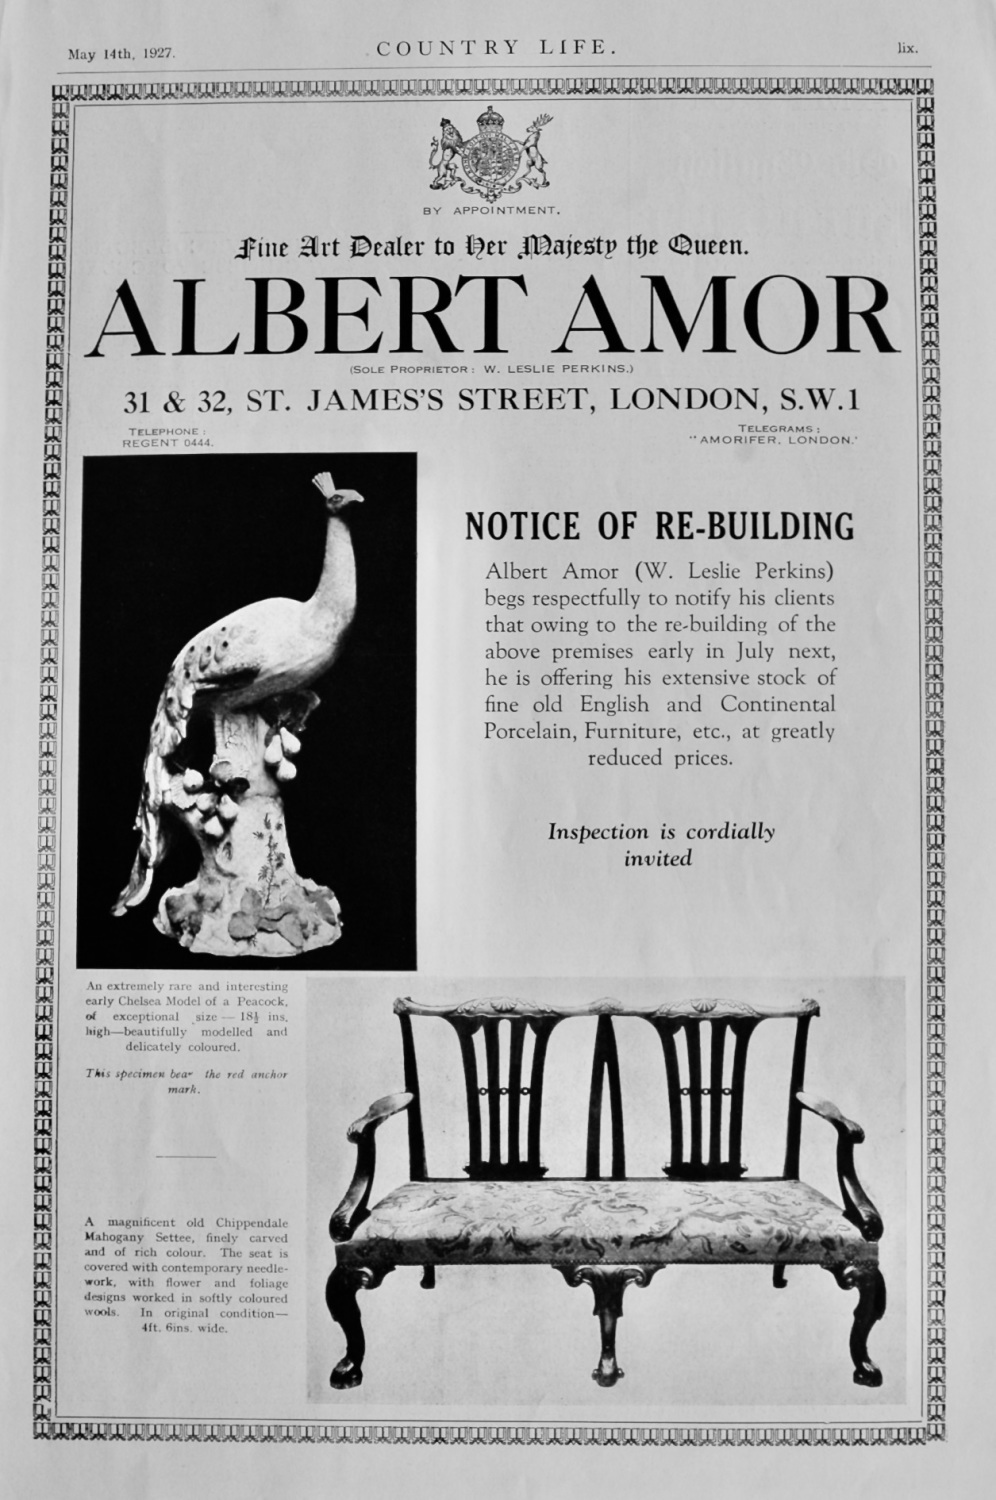 Albert Amor.  (Fine Art Dealer to Her Majesty the Queen)  1927.